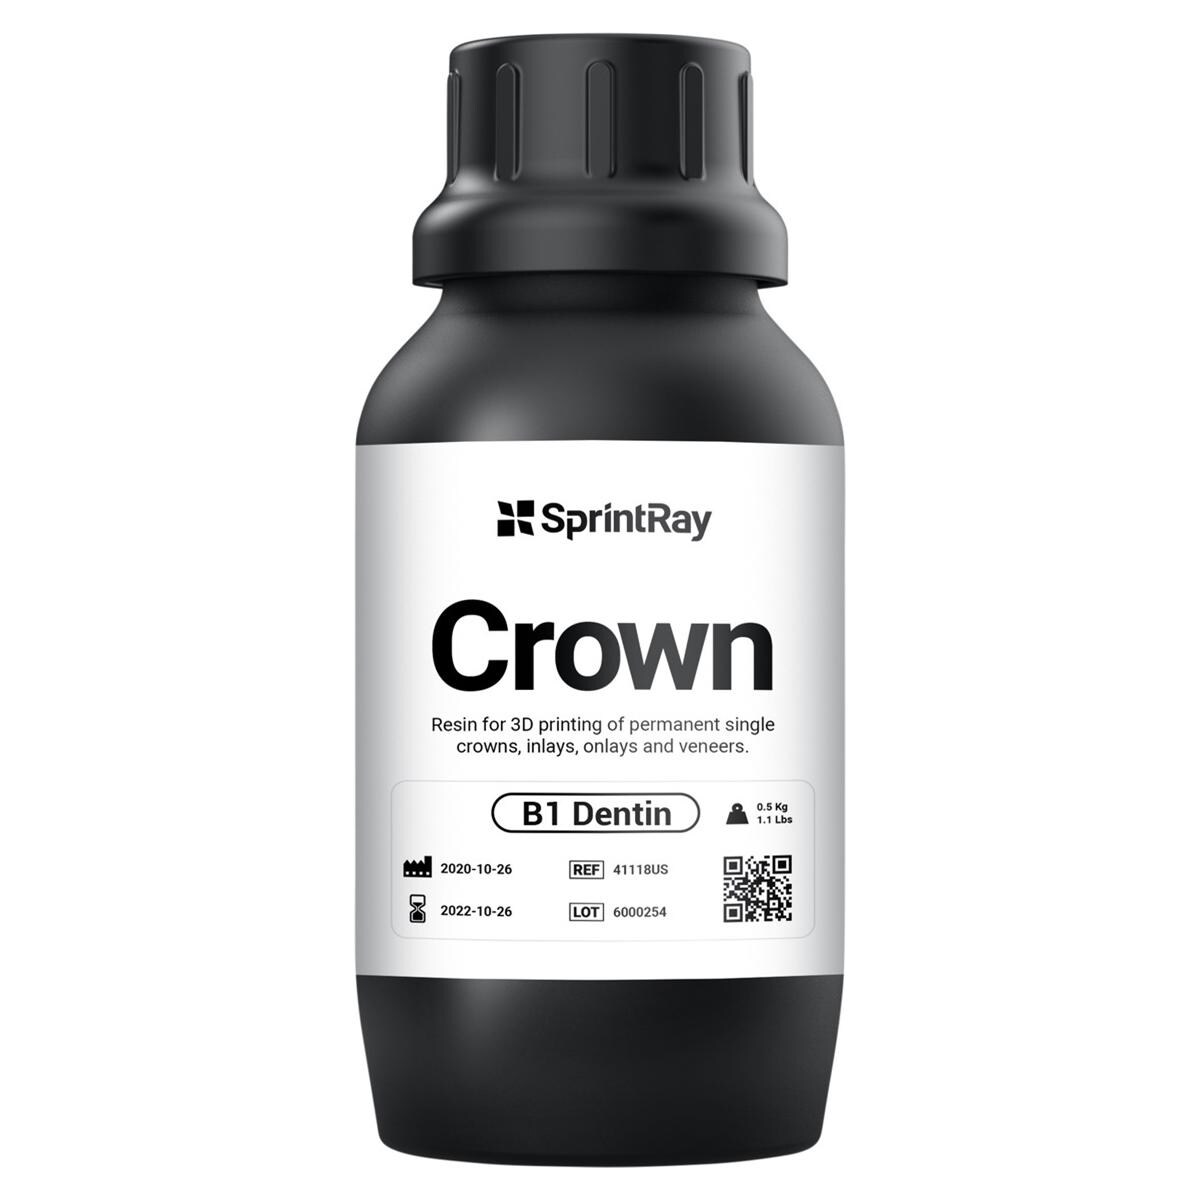 SprintRay Crown - B1 Dentin